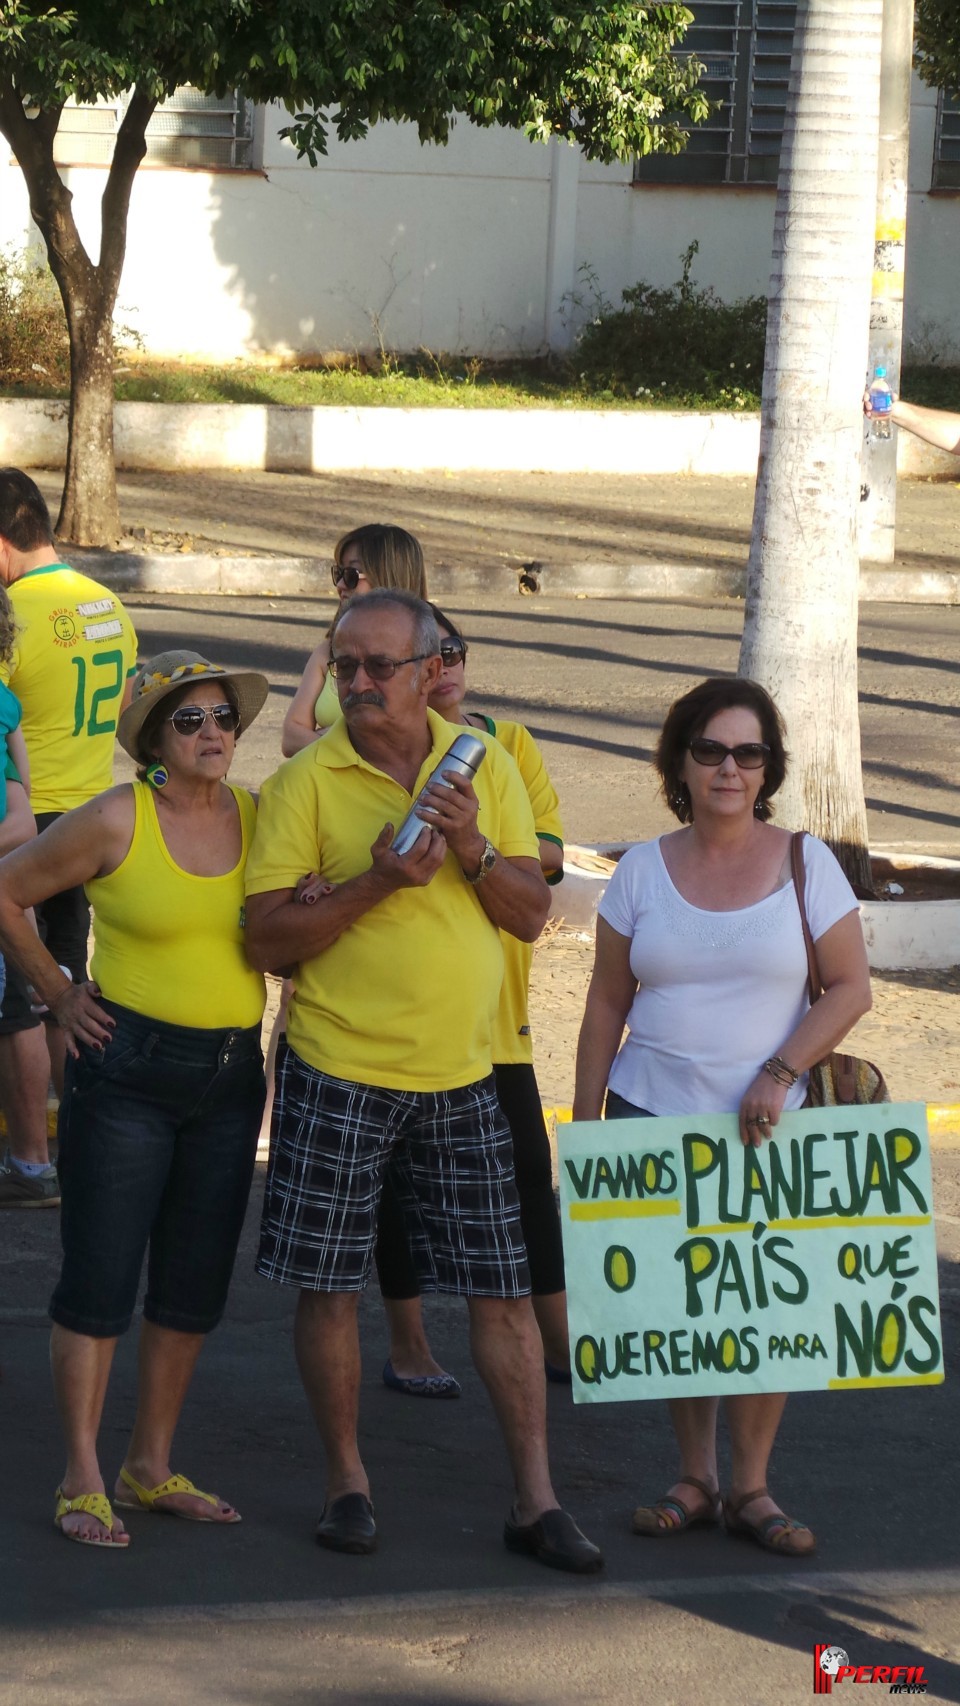 Mesmo com pouco público, manifestação em Três Lagoas mostra mensagem de mudança